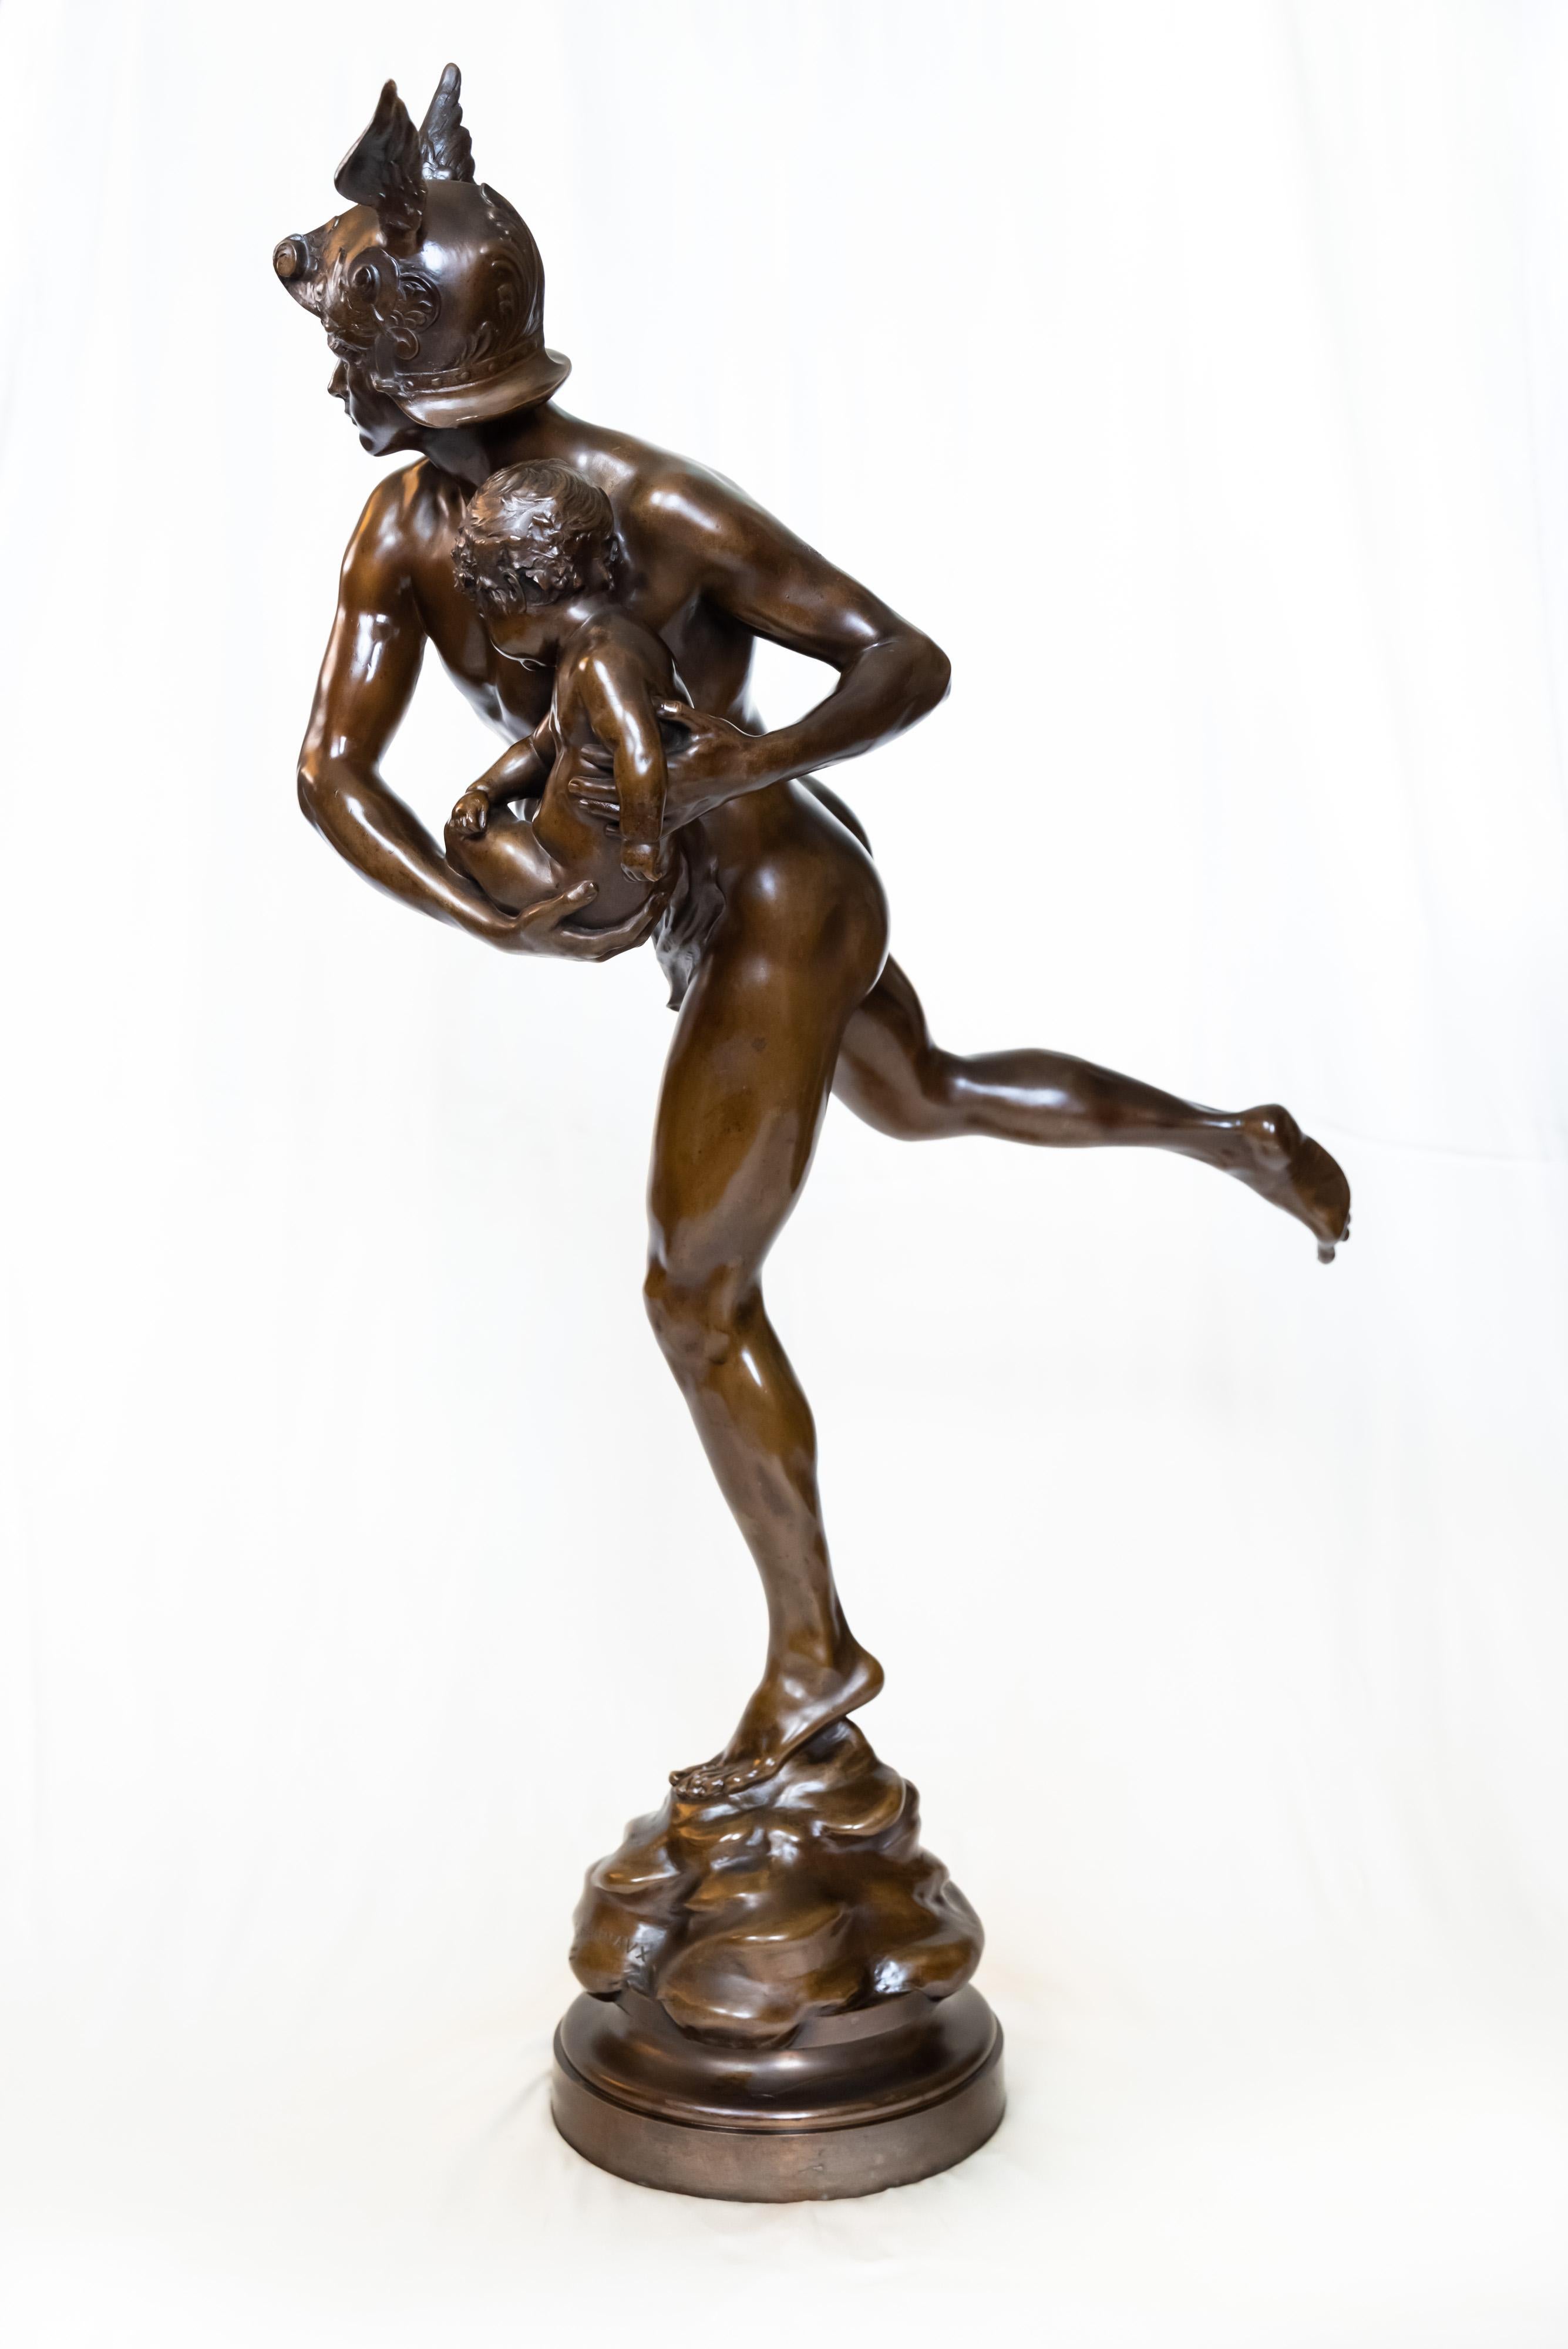 Mercure portant Cupidon par le sculpteur français Emmanuel Hannaux. En bronze patiné au chocolat et reposant sur une base circulaire pivotante, l'œuvre dégage à la fois une élégance souple et une énergie cinétique ardente dans sa représentation du